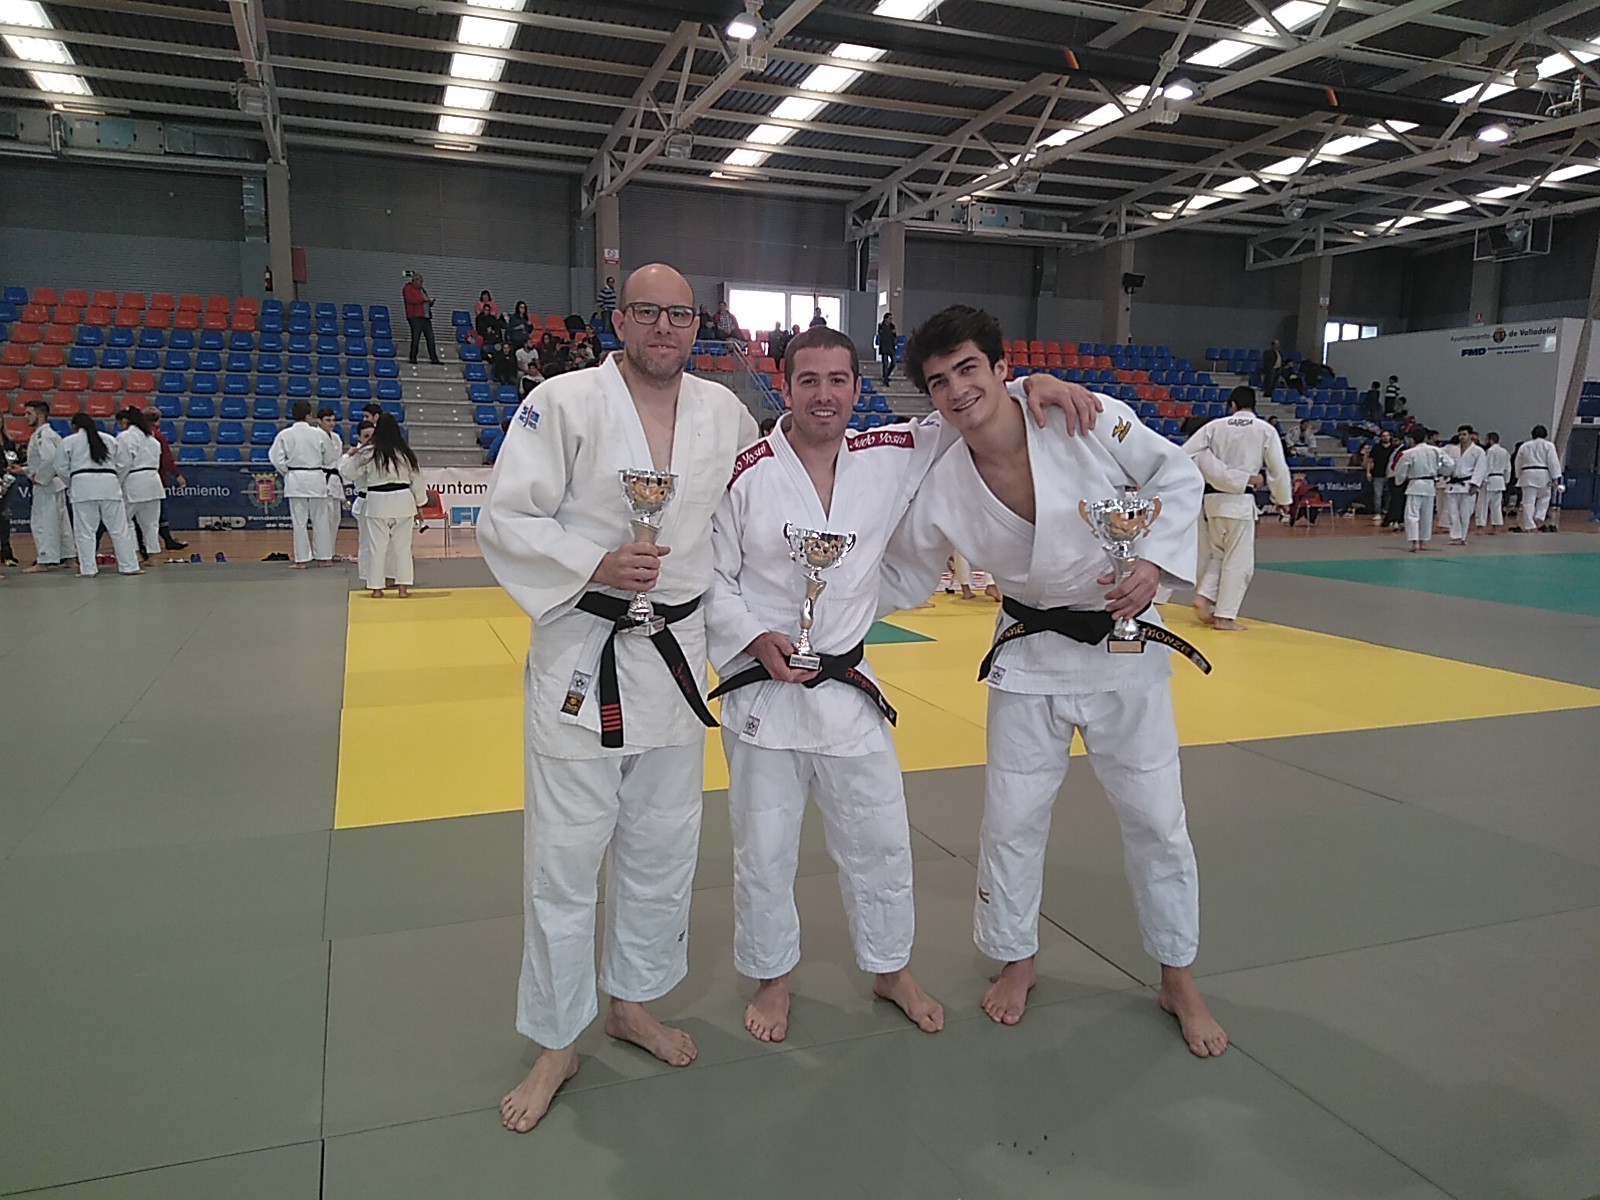 Club de Judo Yoshi: estupendos resultados en el Campeonato Autonómico Senior de Judo